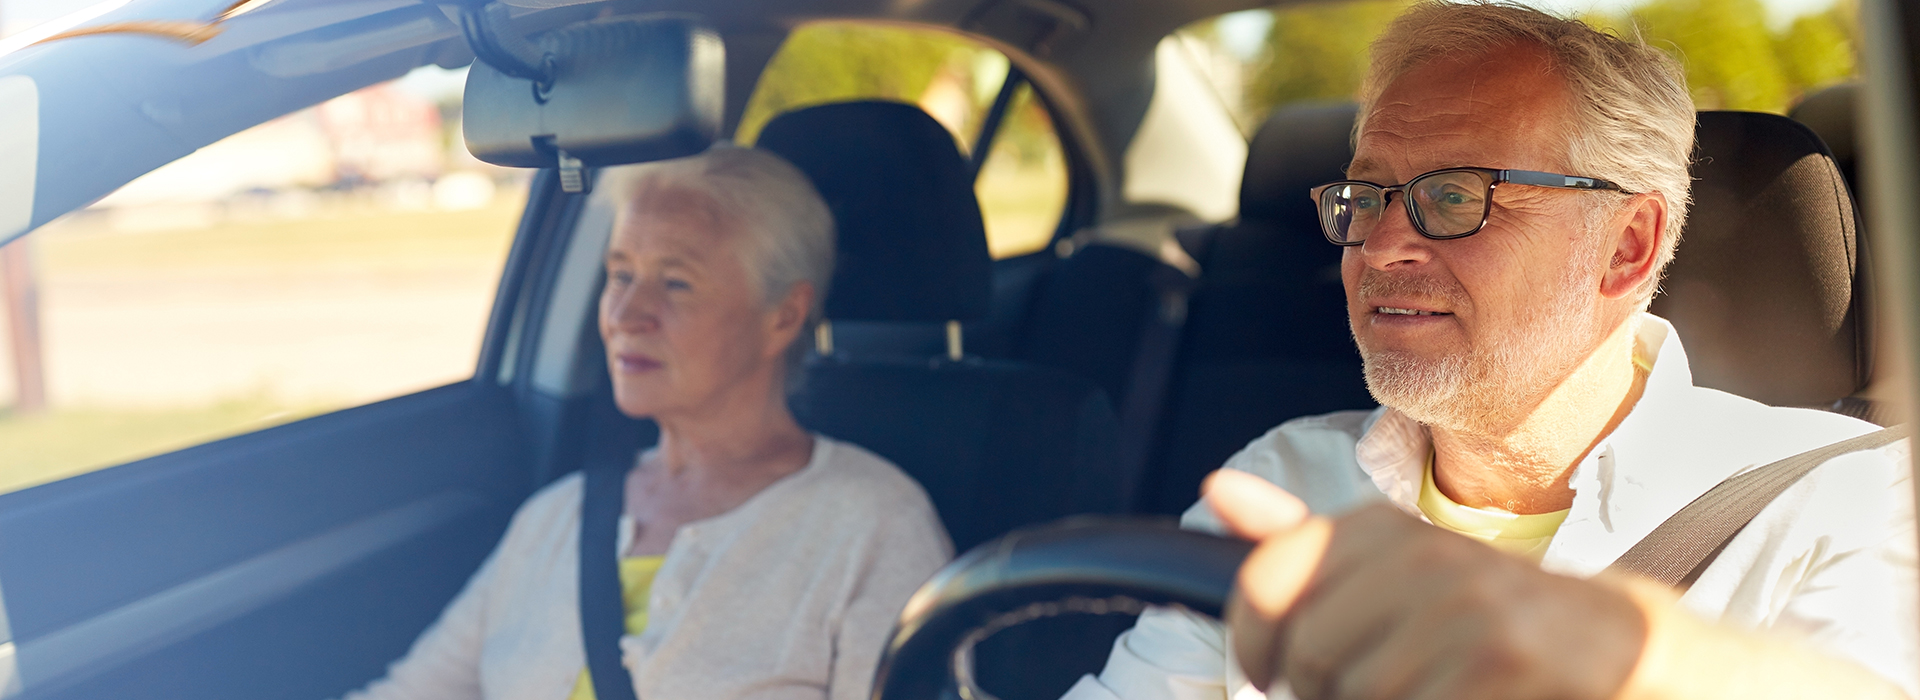 Oudere man en vrouw rijden in auto na verlengen rijbewijs